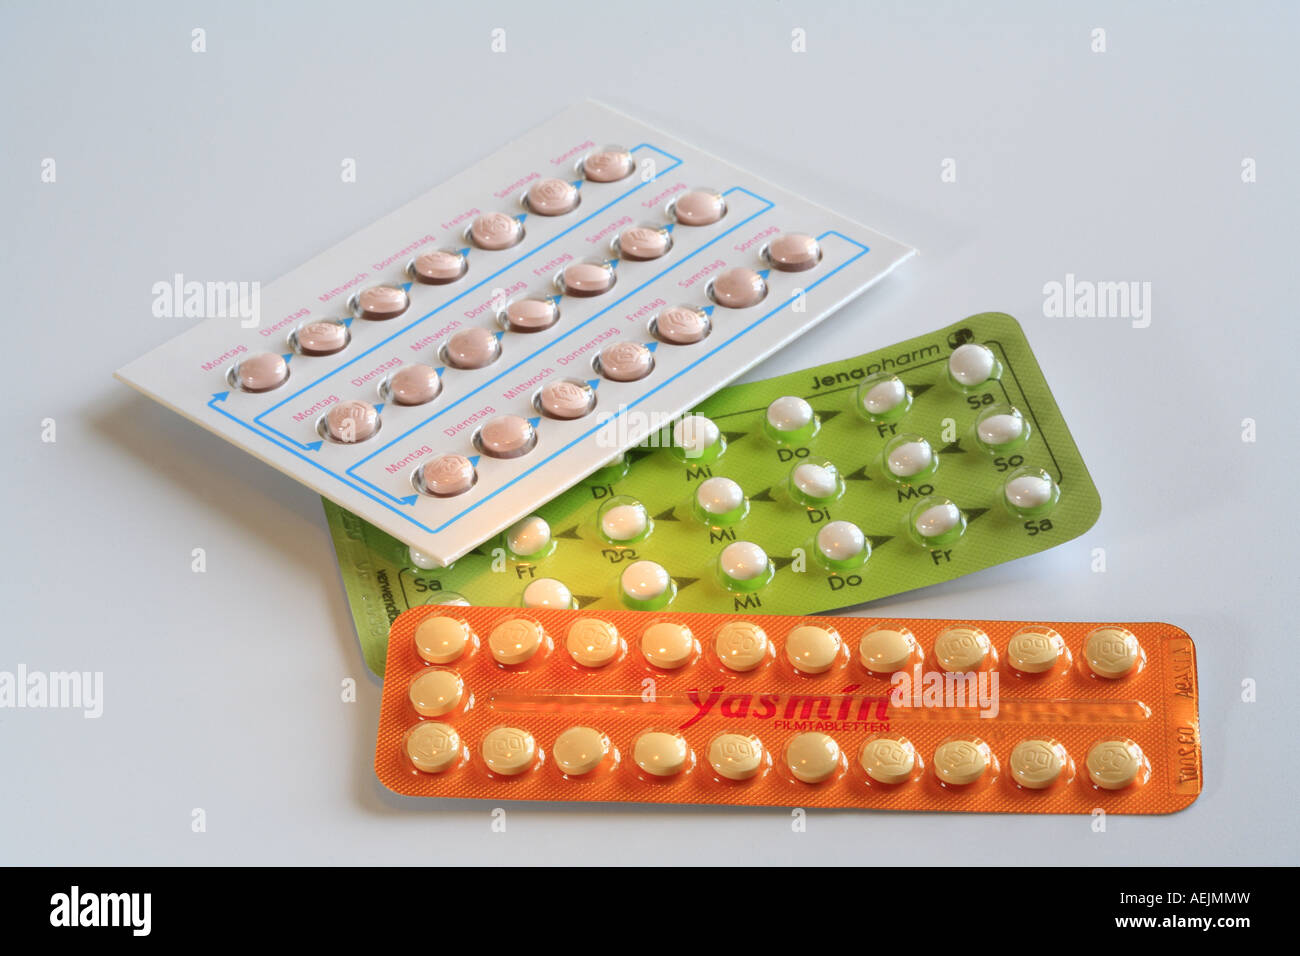 Pilule contraceptive, un mois packs Banque D'Images